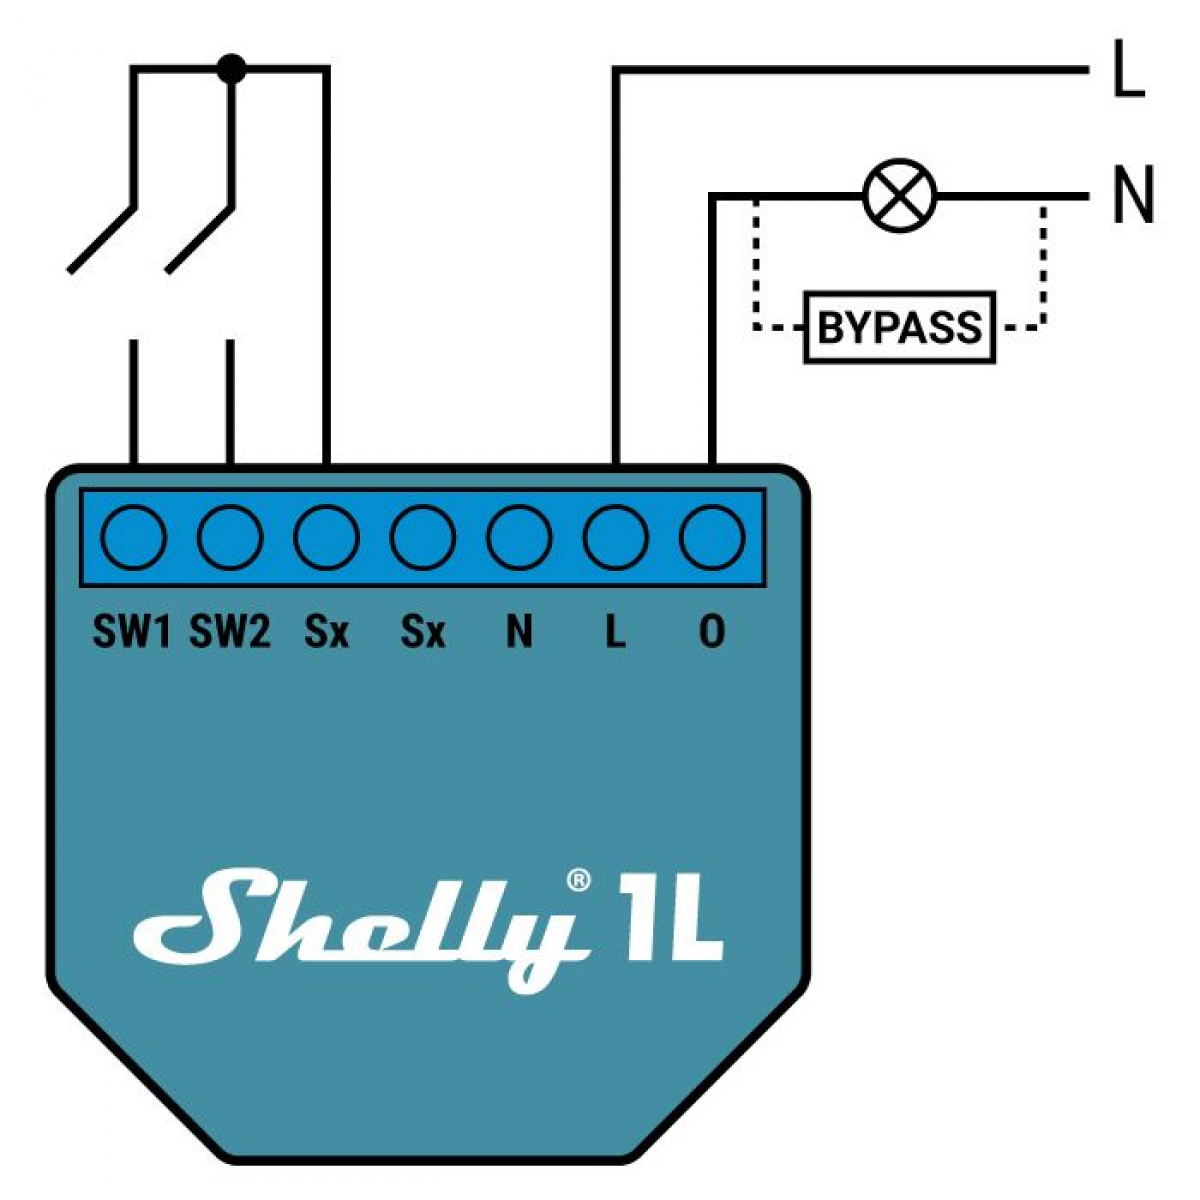 shelly-1l-wifi-funk-schalter-2.jpg